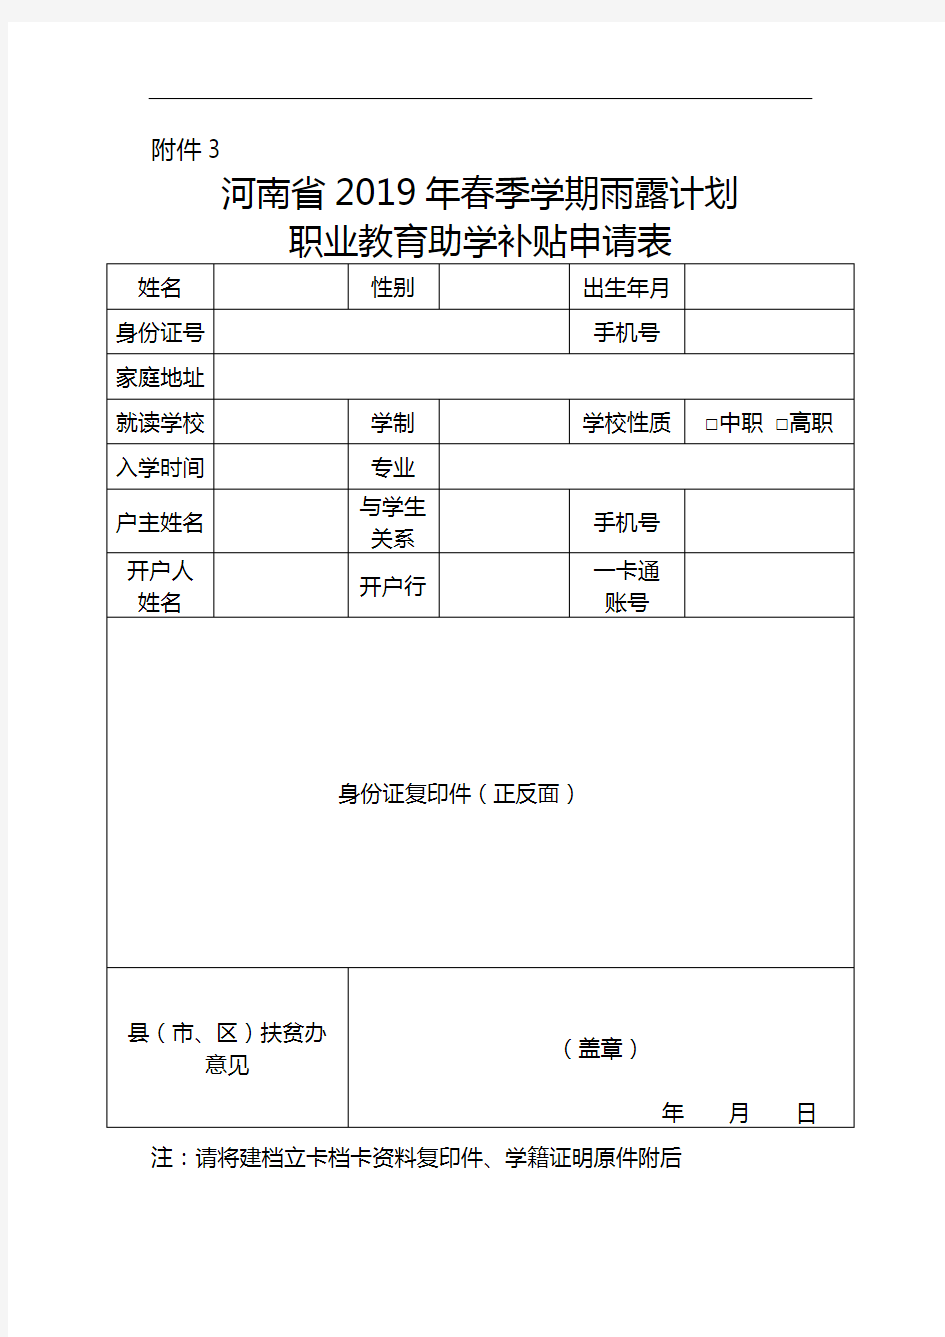 河南省2017年秋季学期雨露计划职业教育助学补贴申请表